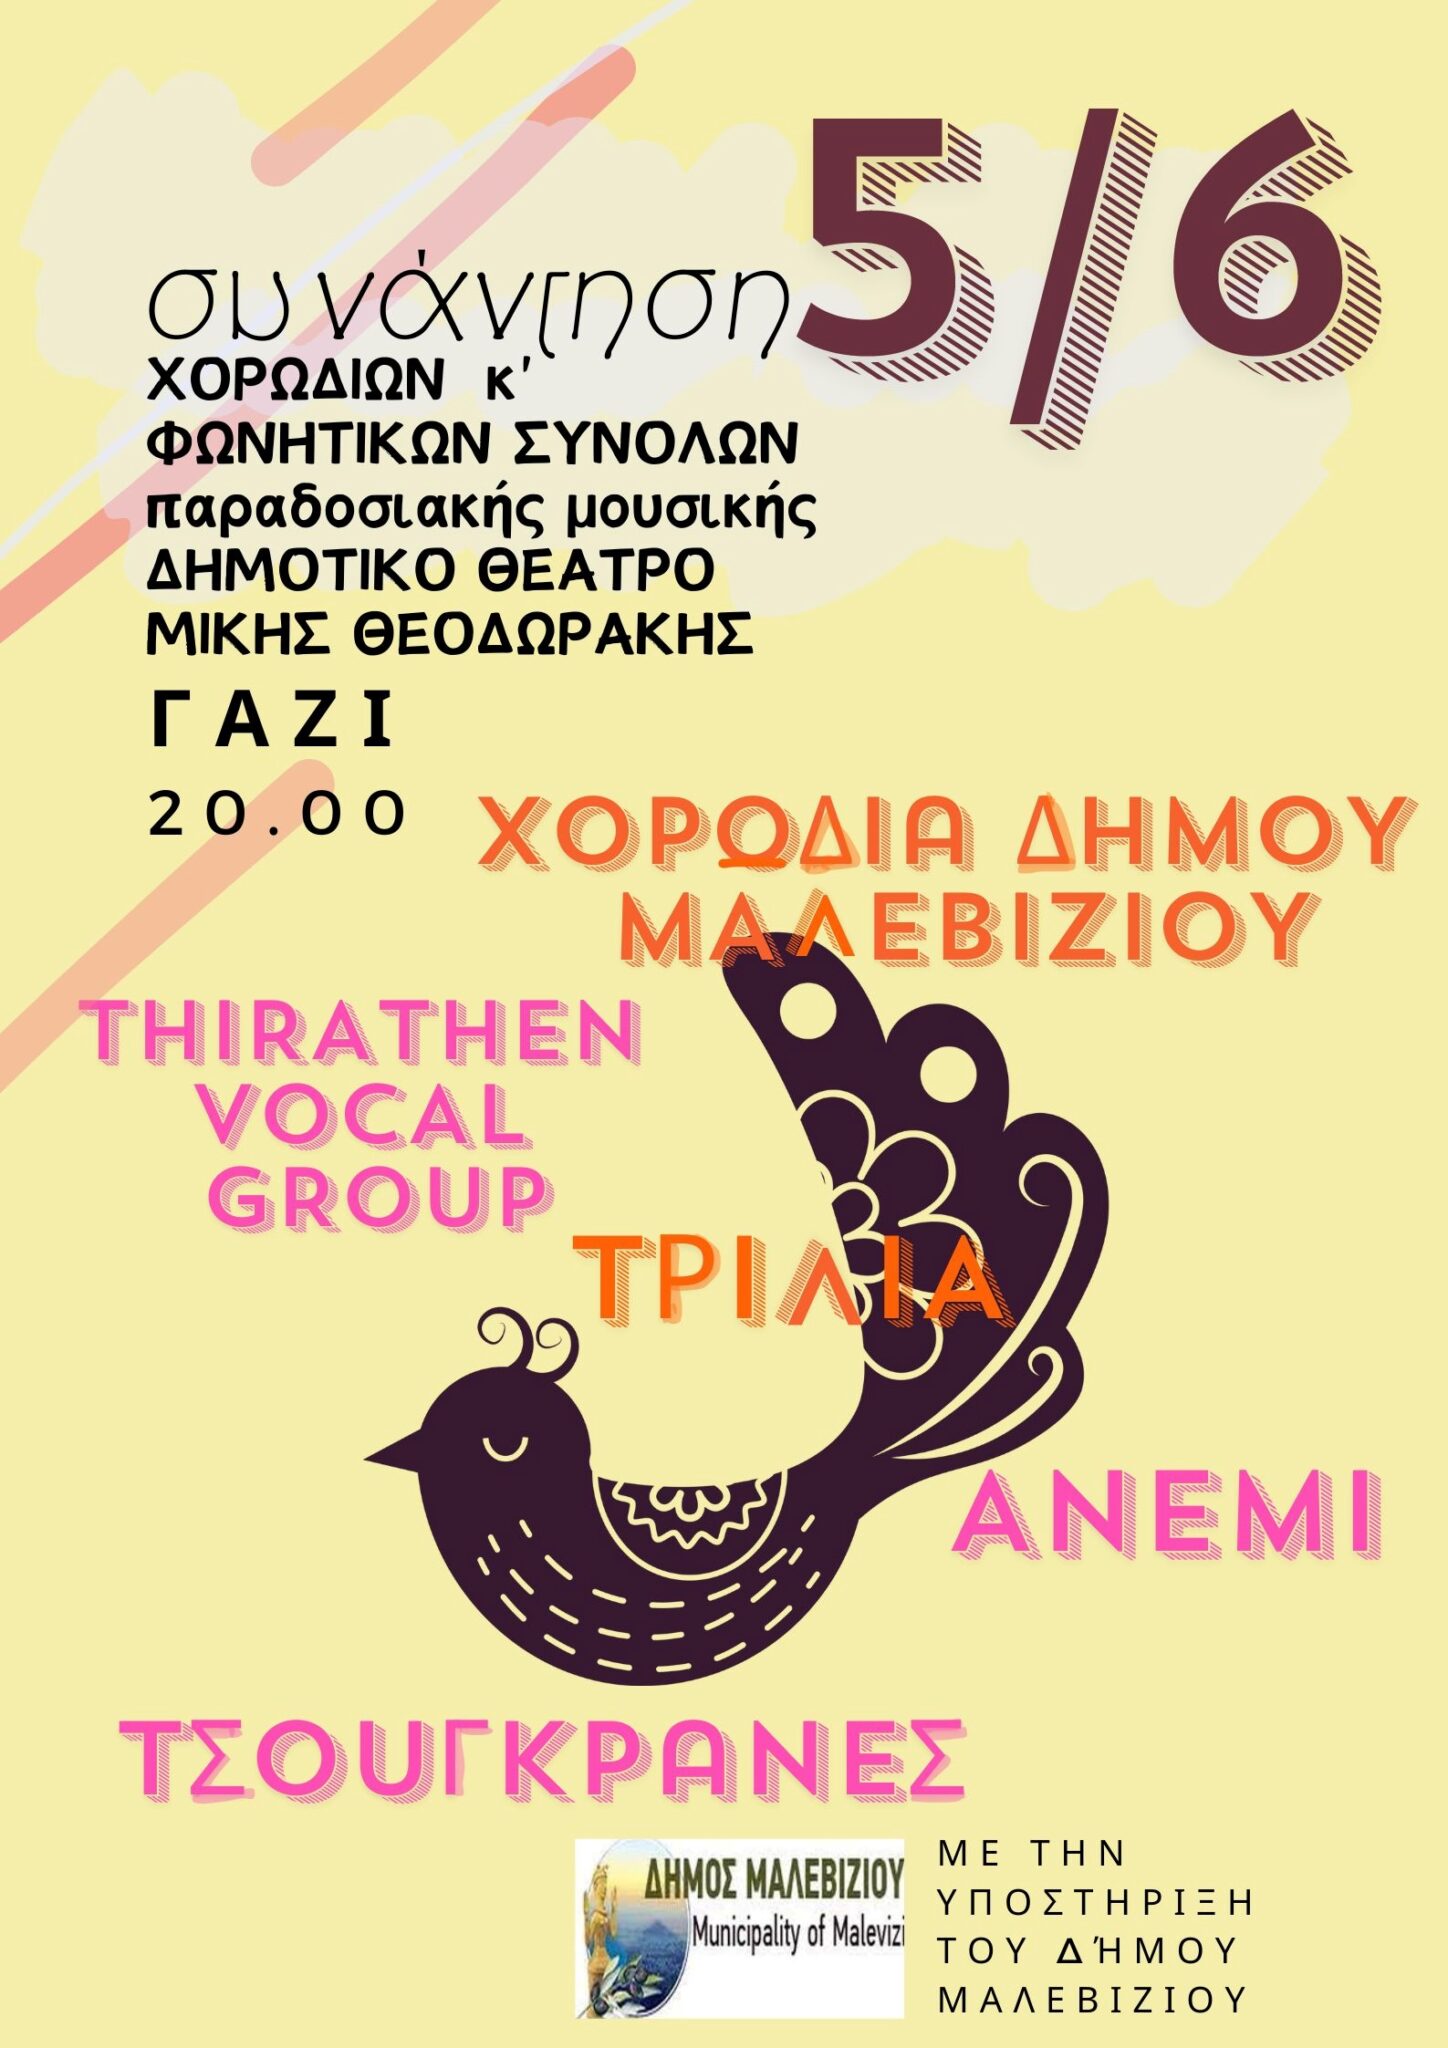 Στις 20.00 απόψε στο Δημοτικό Θέατρο Μαλεβιζίου «Μίκης Θεοδωράκης» η συνάντηση Χορωδιών και Φωνητικών Συνόλων